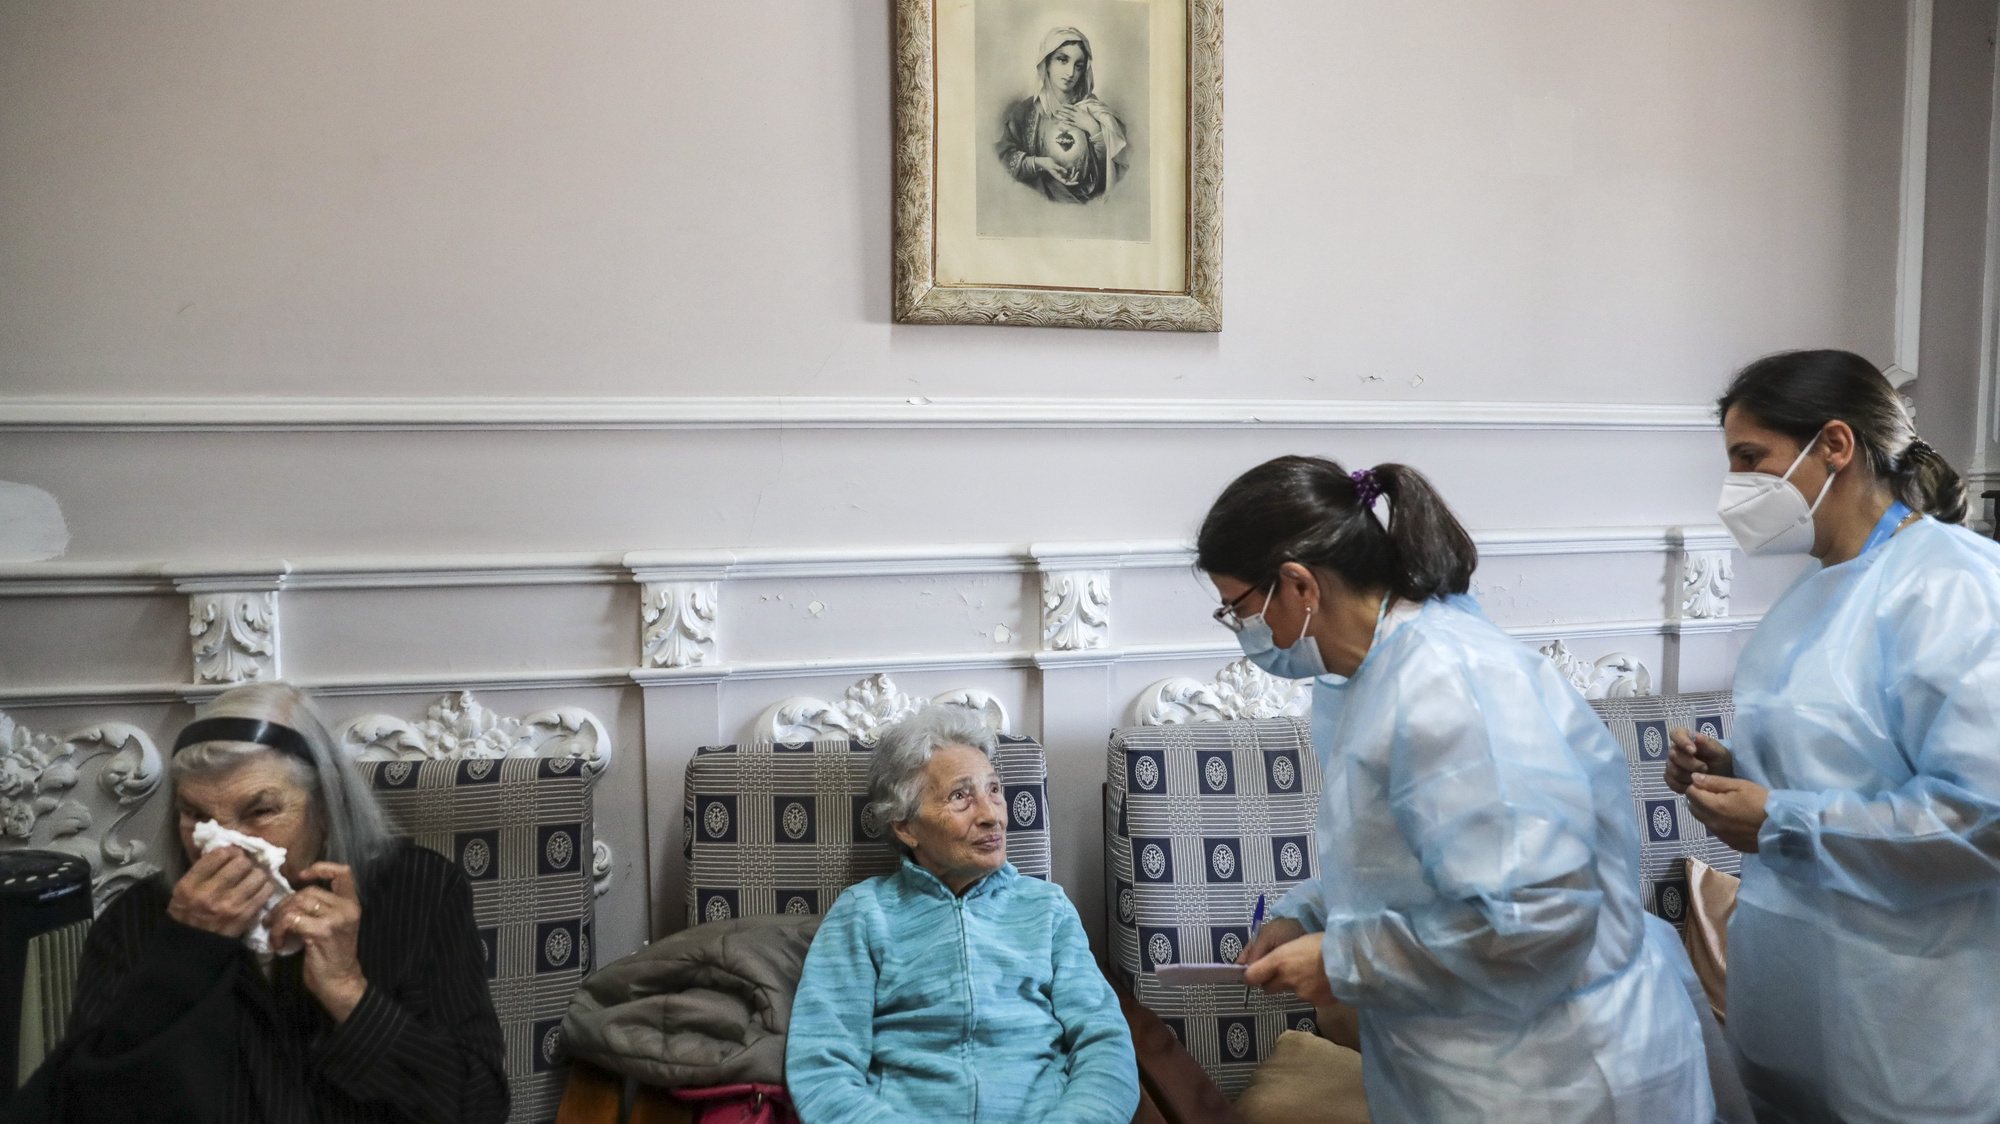 Uma utente de um lar de terceira idade conversa com enfermeiras momentos antes de ser vacinada com a quinta dose da vacina contra a covid-19, em Lisboa, 19 de maio de 2022. TIAGO PETINGA/LUSA